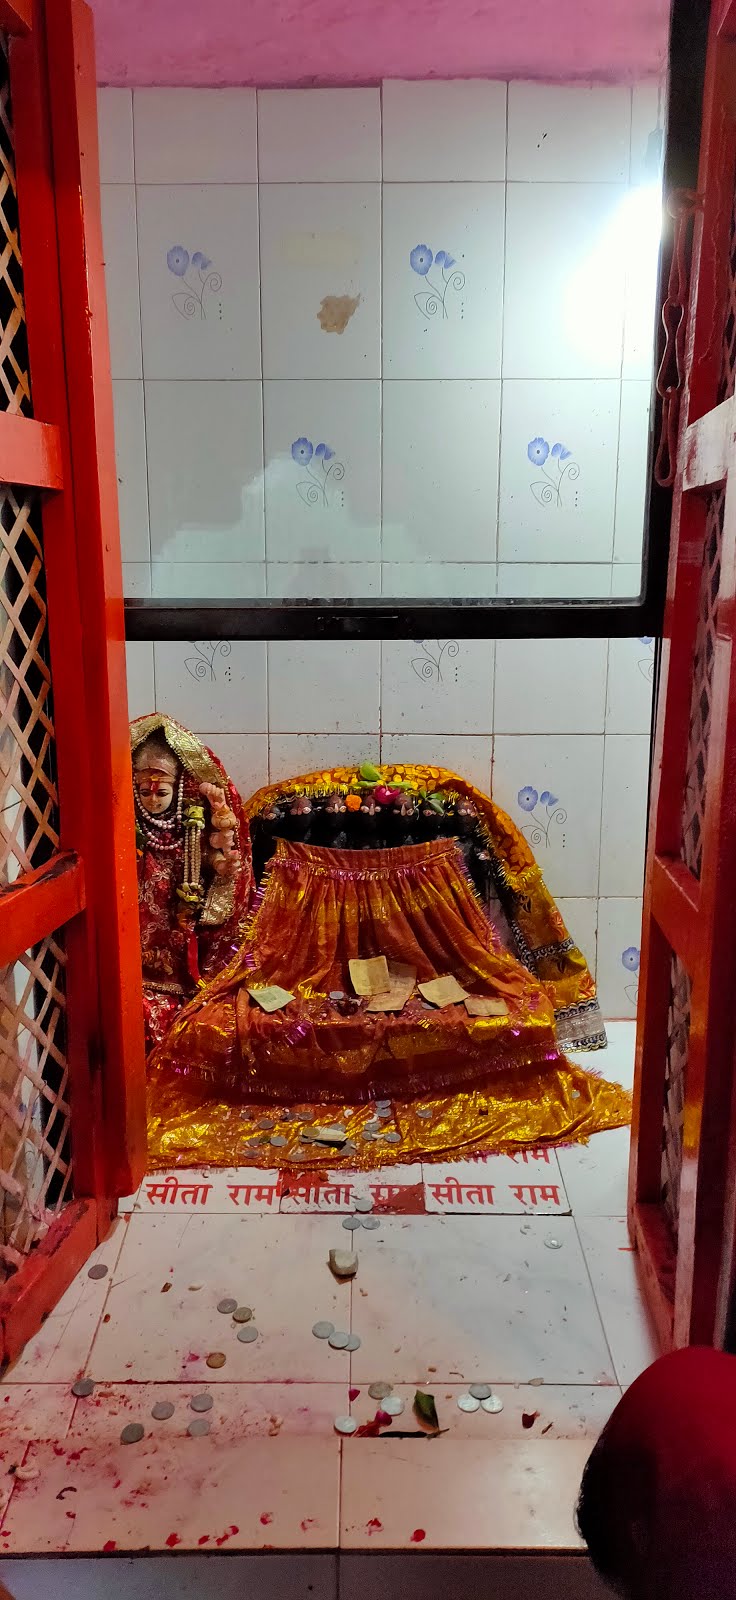 माँ जानकी जी द्वारा स्थापित नवदेवी मन्दिर